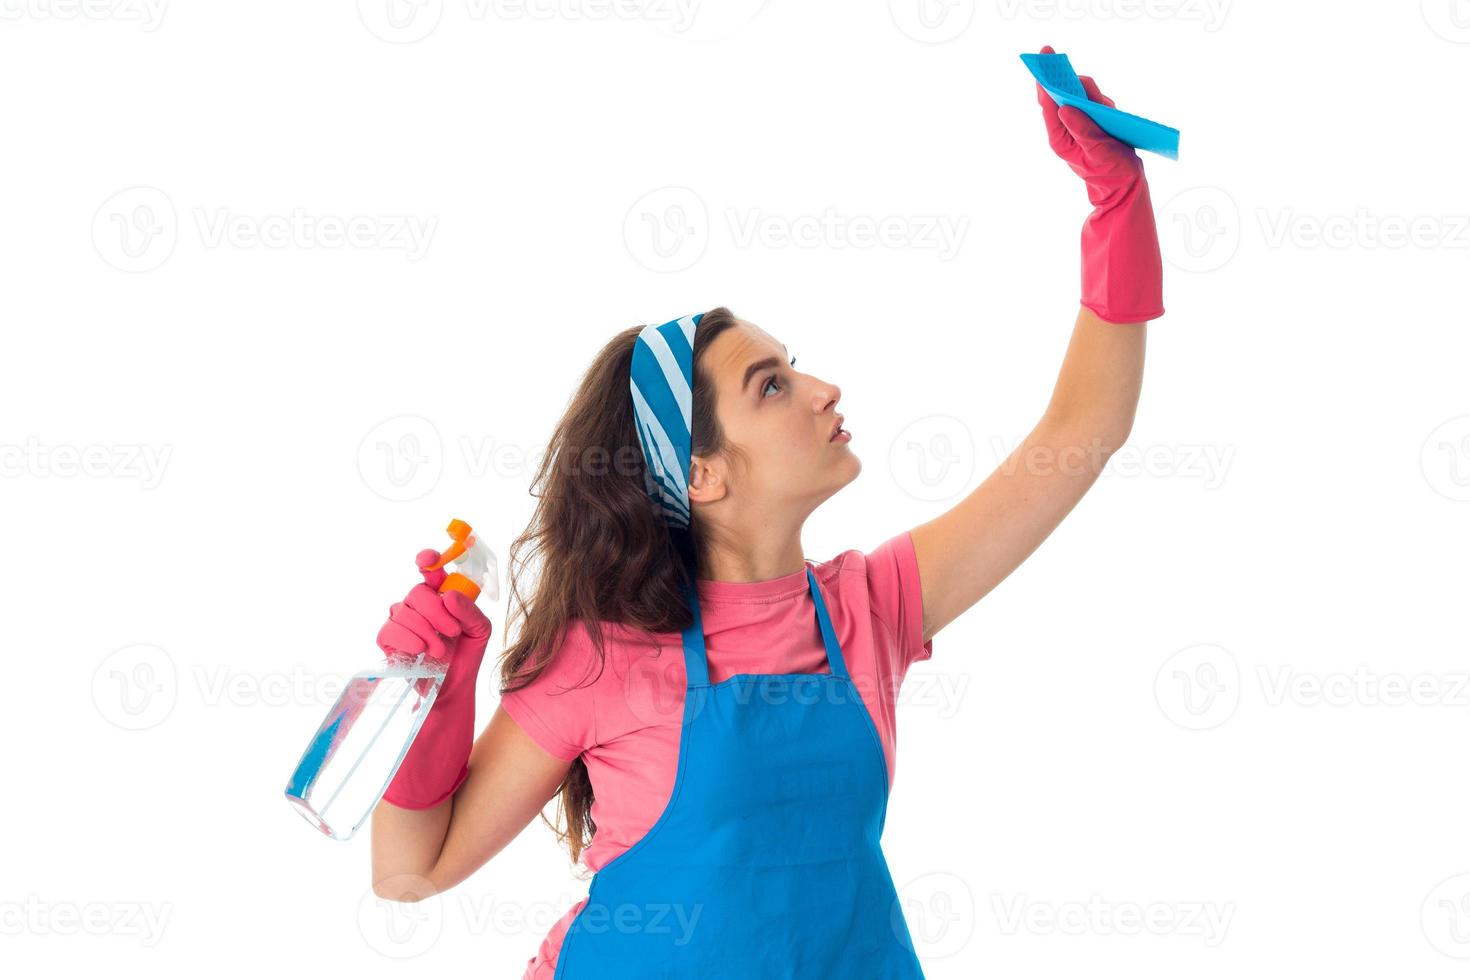 mulher jovem empregada com produtos de limpeza foto